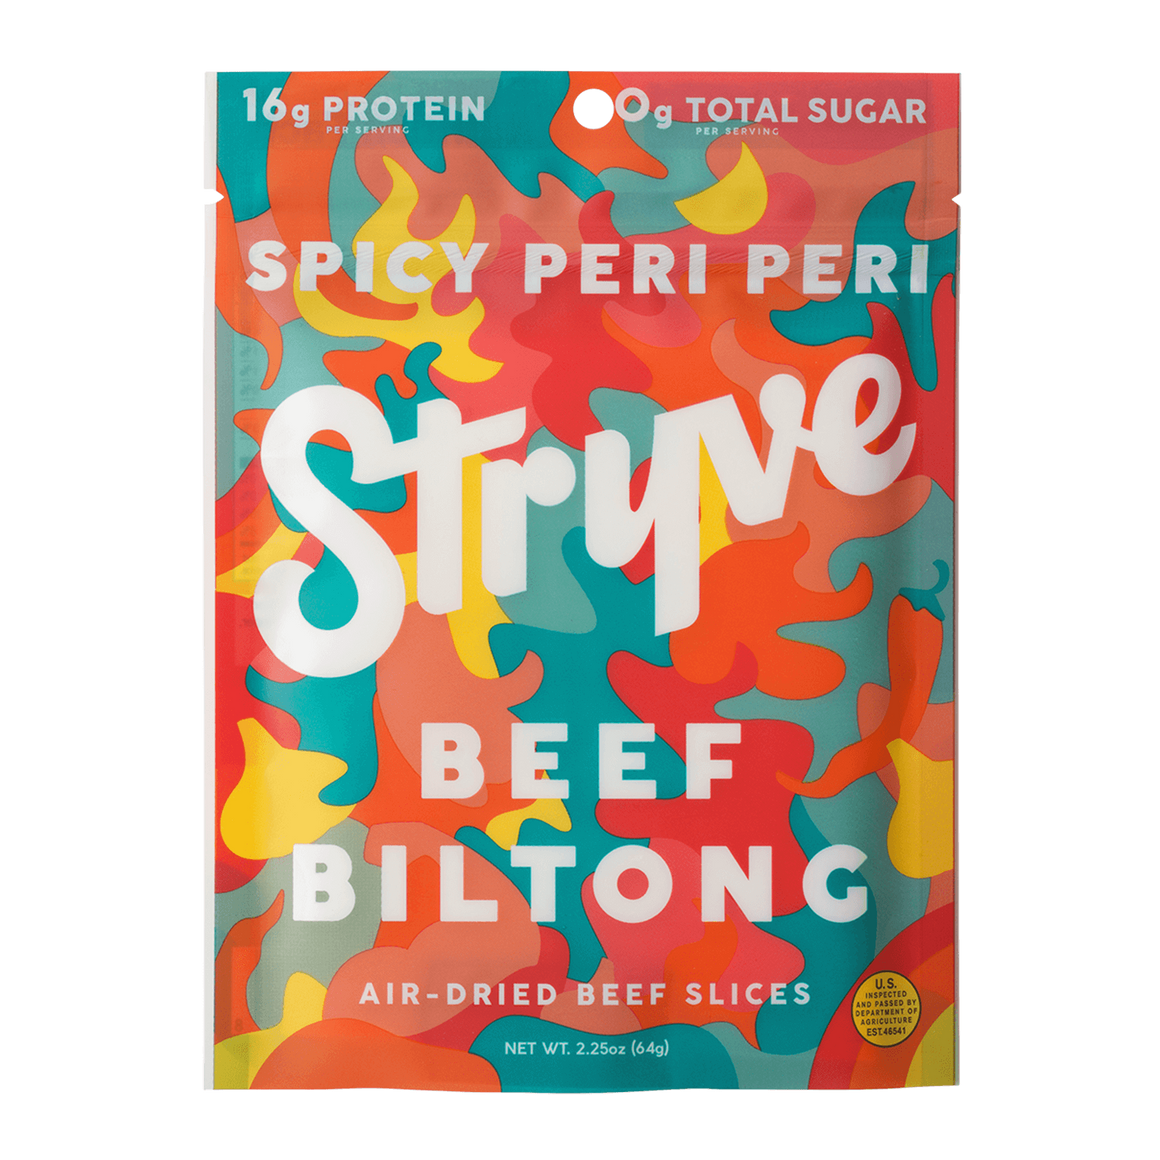 Spicy Pepper (Peri Peri) Sliced Steak